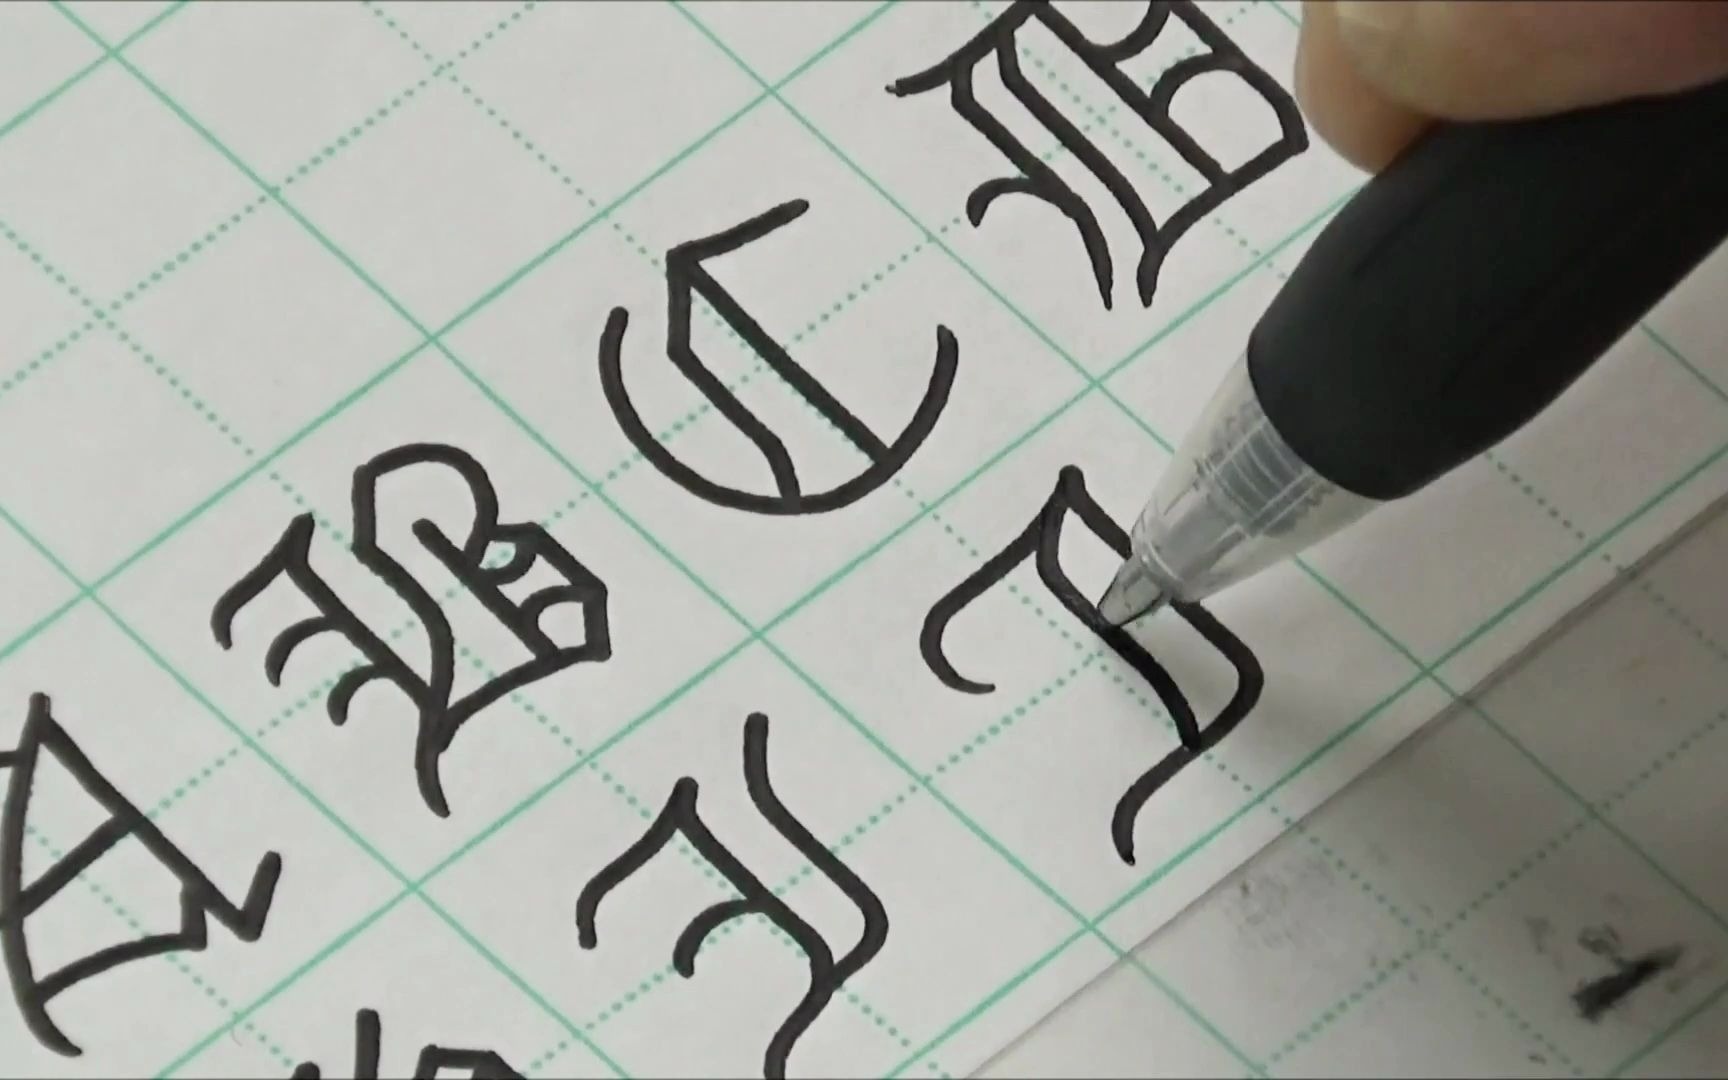 Viết tay] Thư pháp hiện đại - Viết kiểu chữ Blackletter bằng bút ...